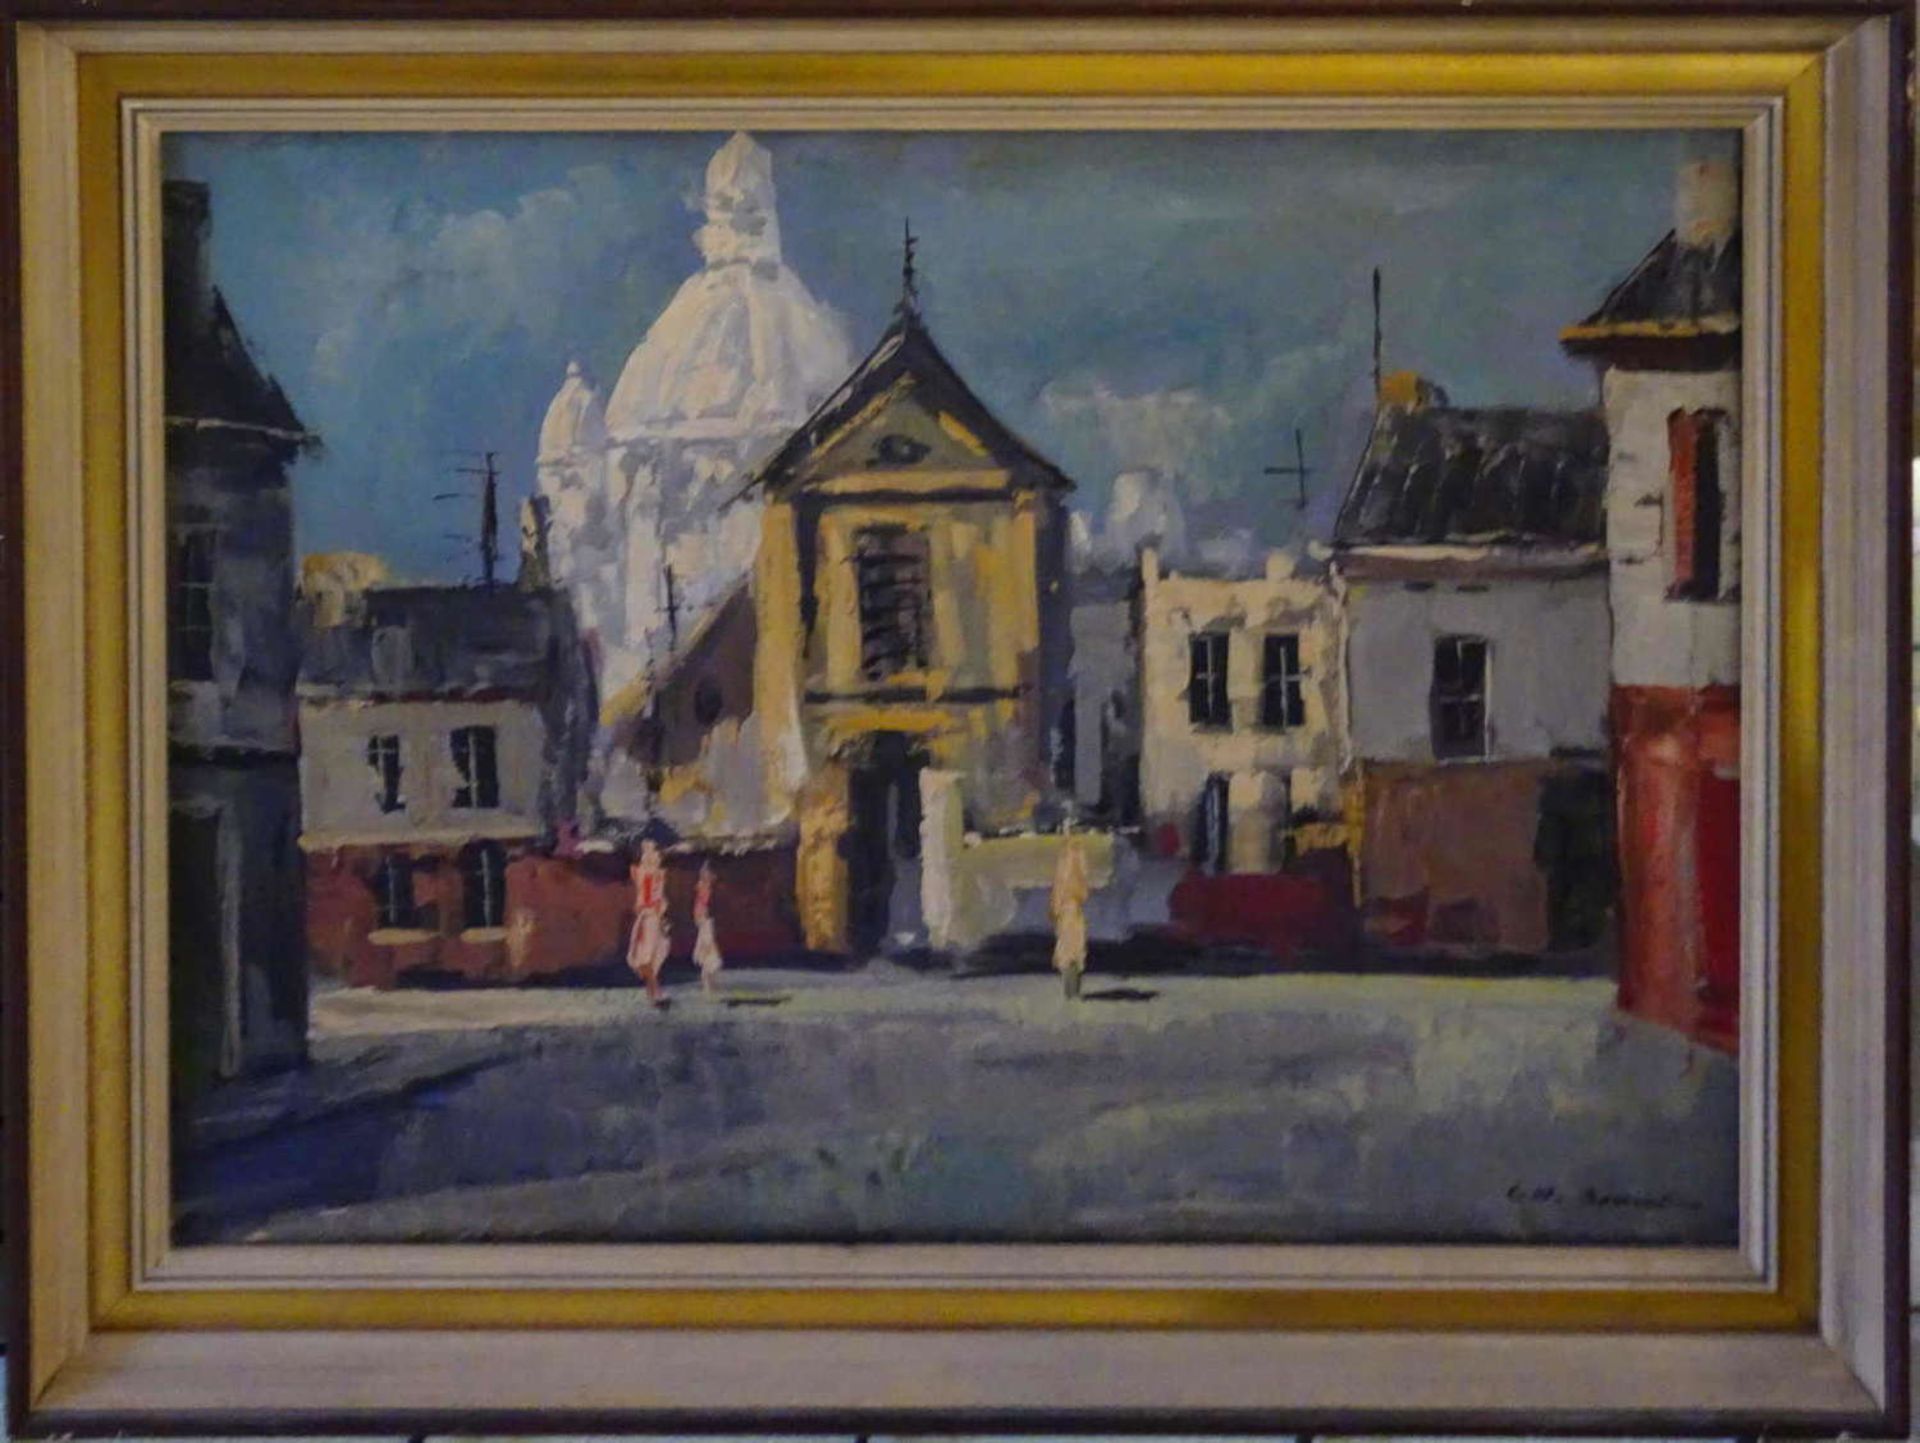 Charles Emil Brunner?, Ölgemälde auf Leinwand, "Häuserzeile mit Blick auf Kirche", rechts unten